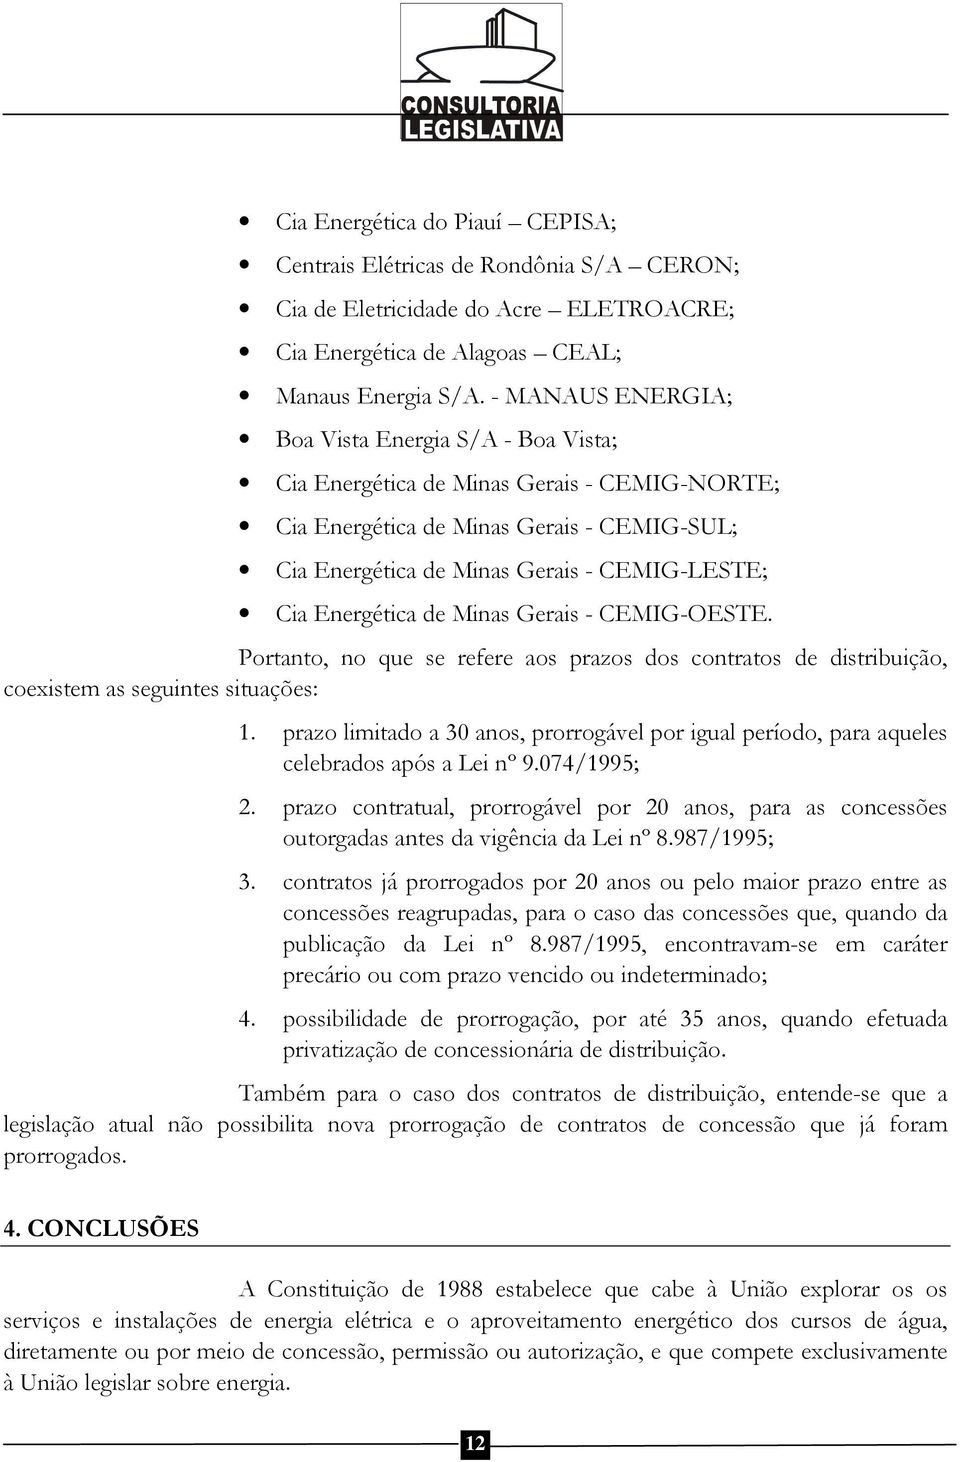 Energética de Minas Gerais - CEMIG-OESTE. Portanto, no que se refere aos prazos dos contratos de distribuição, coexistem as seguintes situações: 1.